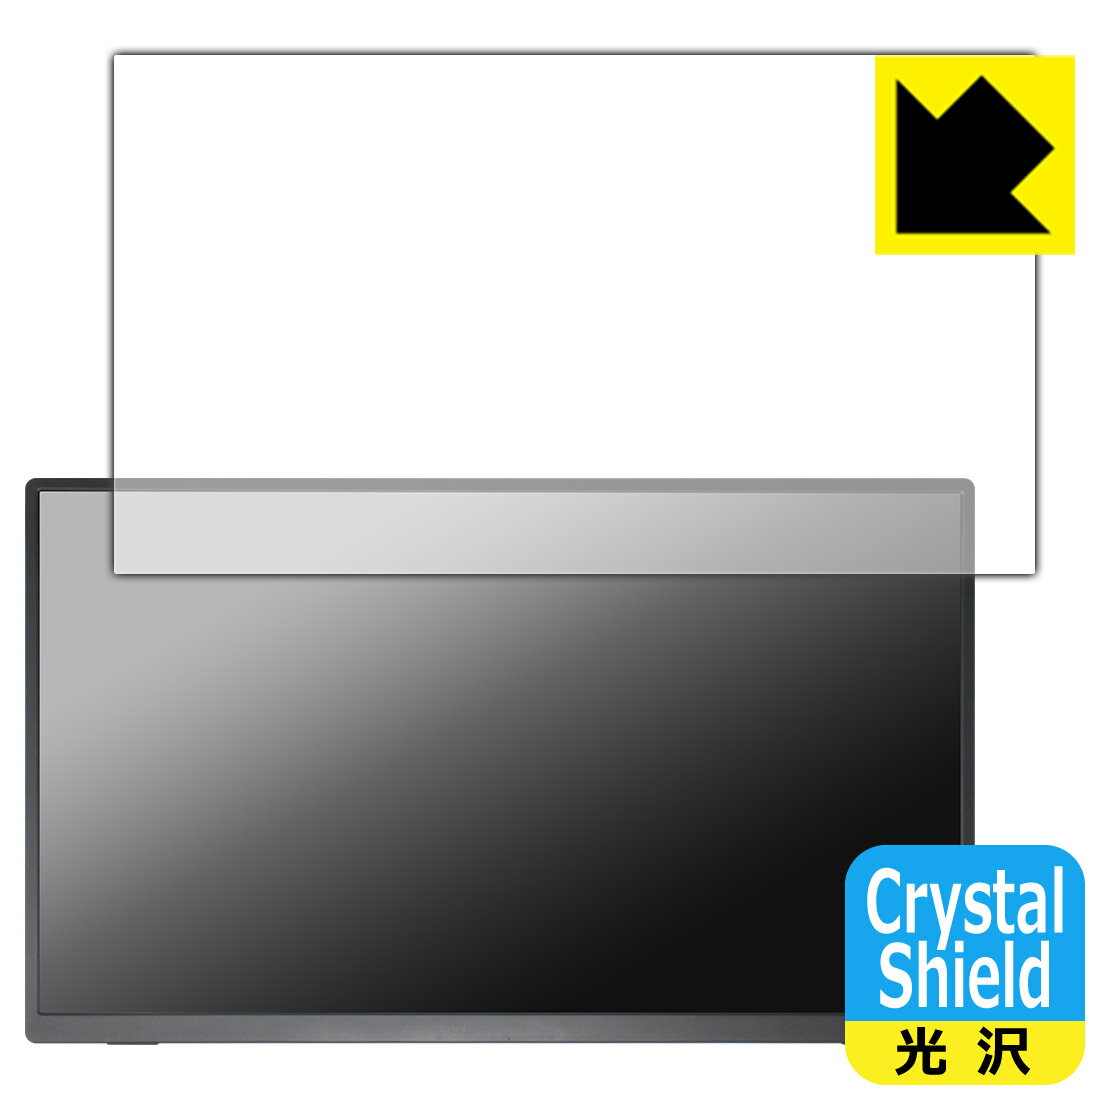 Crystal Shield保護フィルム Acouto 18.5インチ モバイルモニター Zen18 日本製 自社製造直販